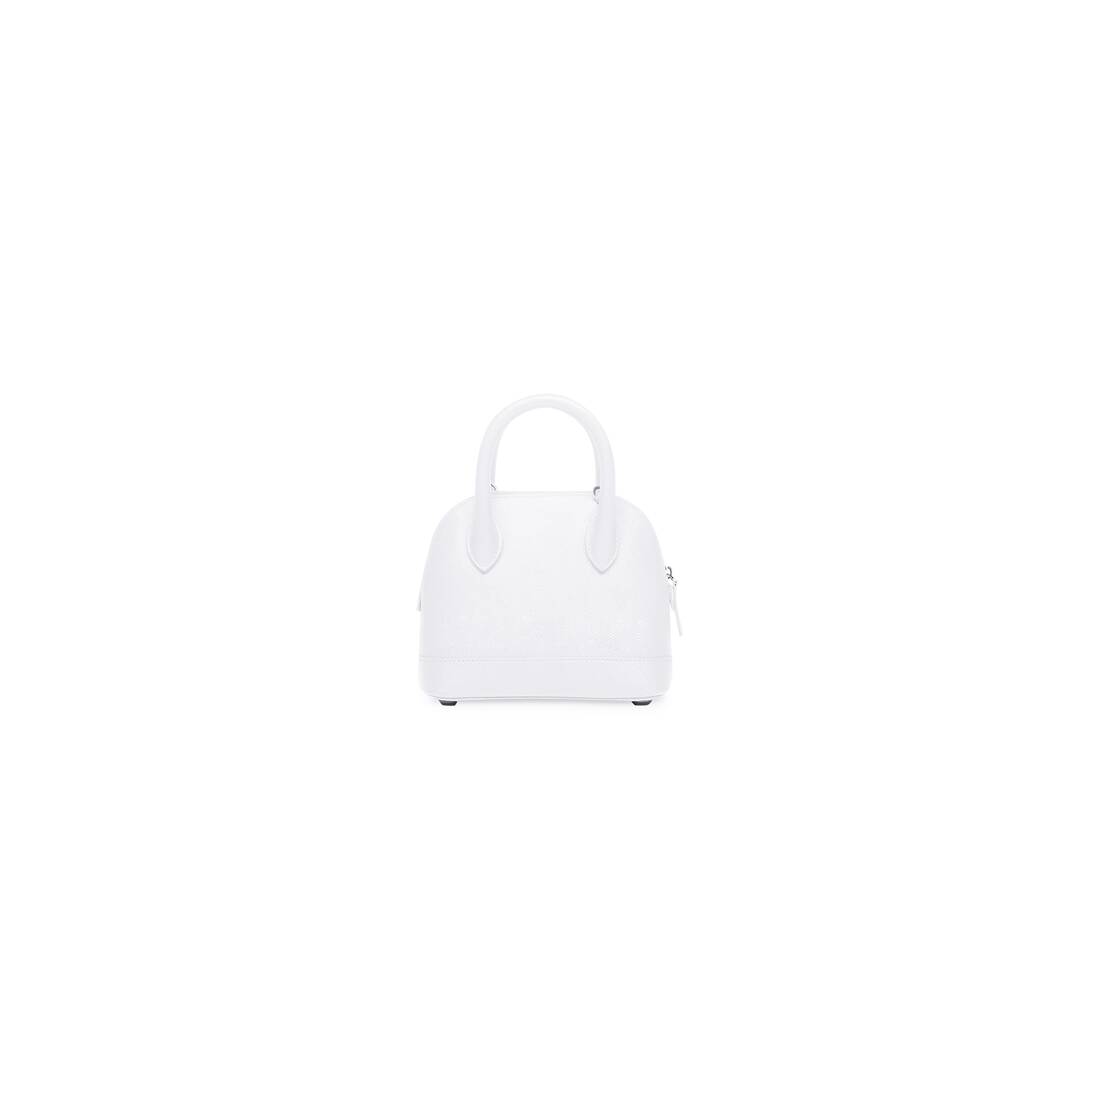 Balenciaga XXS Ville Top Handle Bag in Optic White & Black